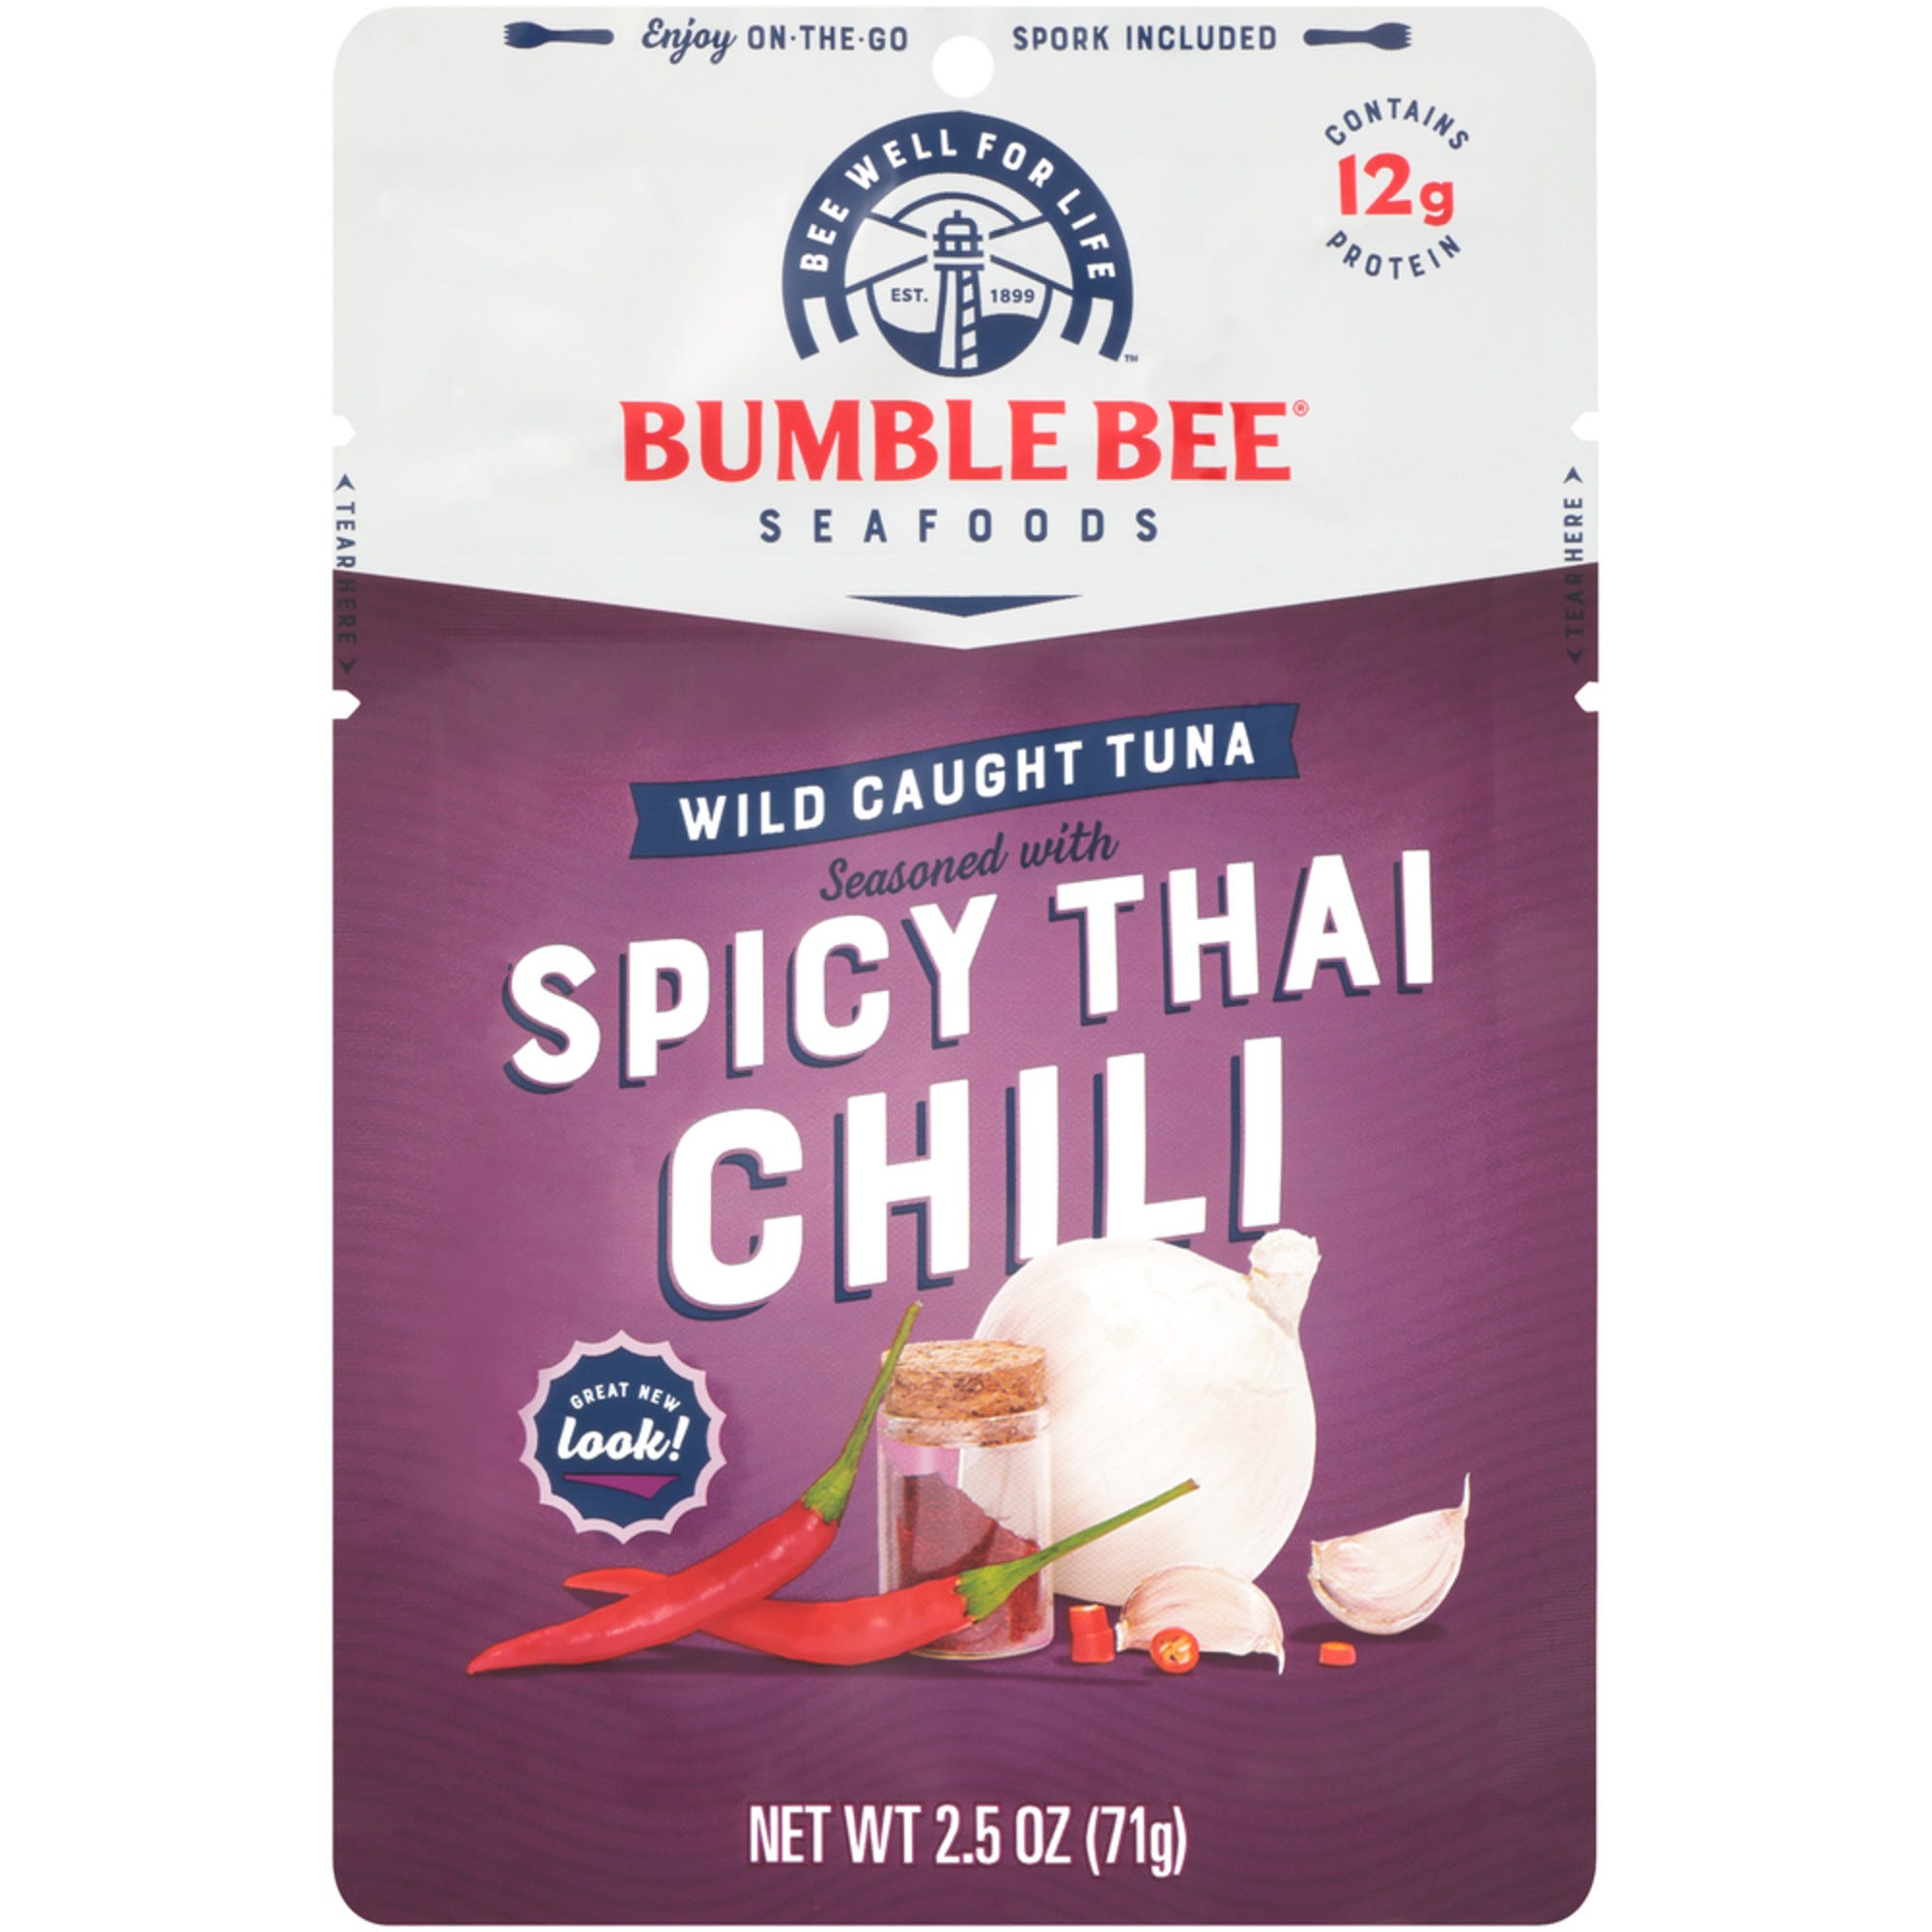 Bumble Bee Chili Seasoned Tuna, Spicy Thai - 2.5 oz